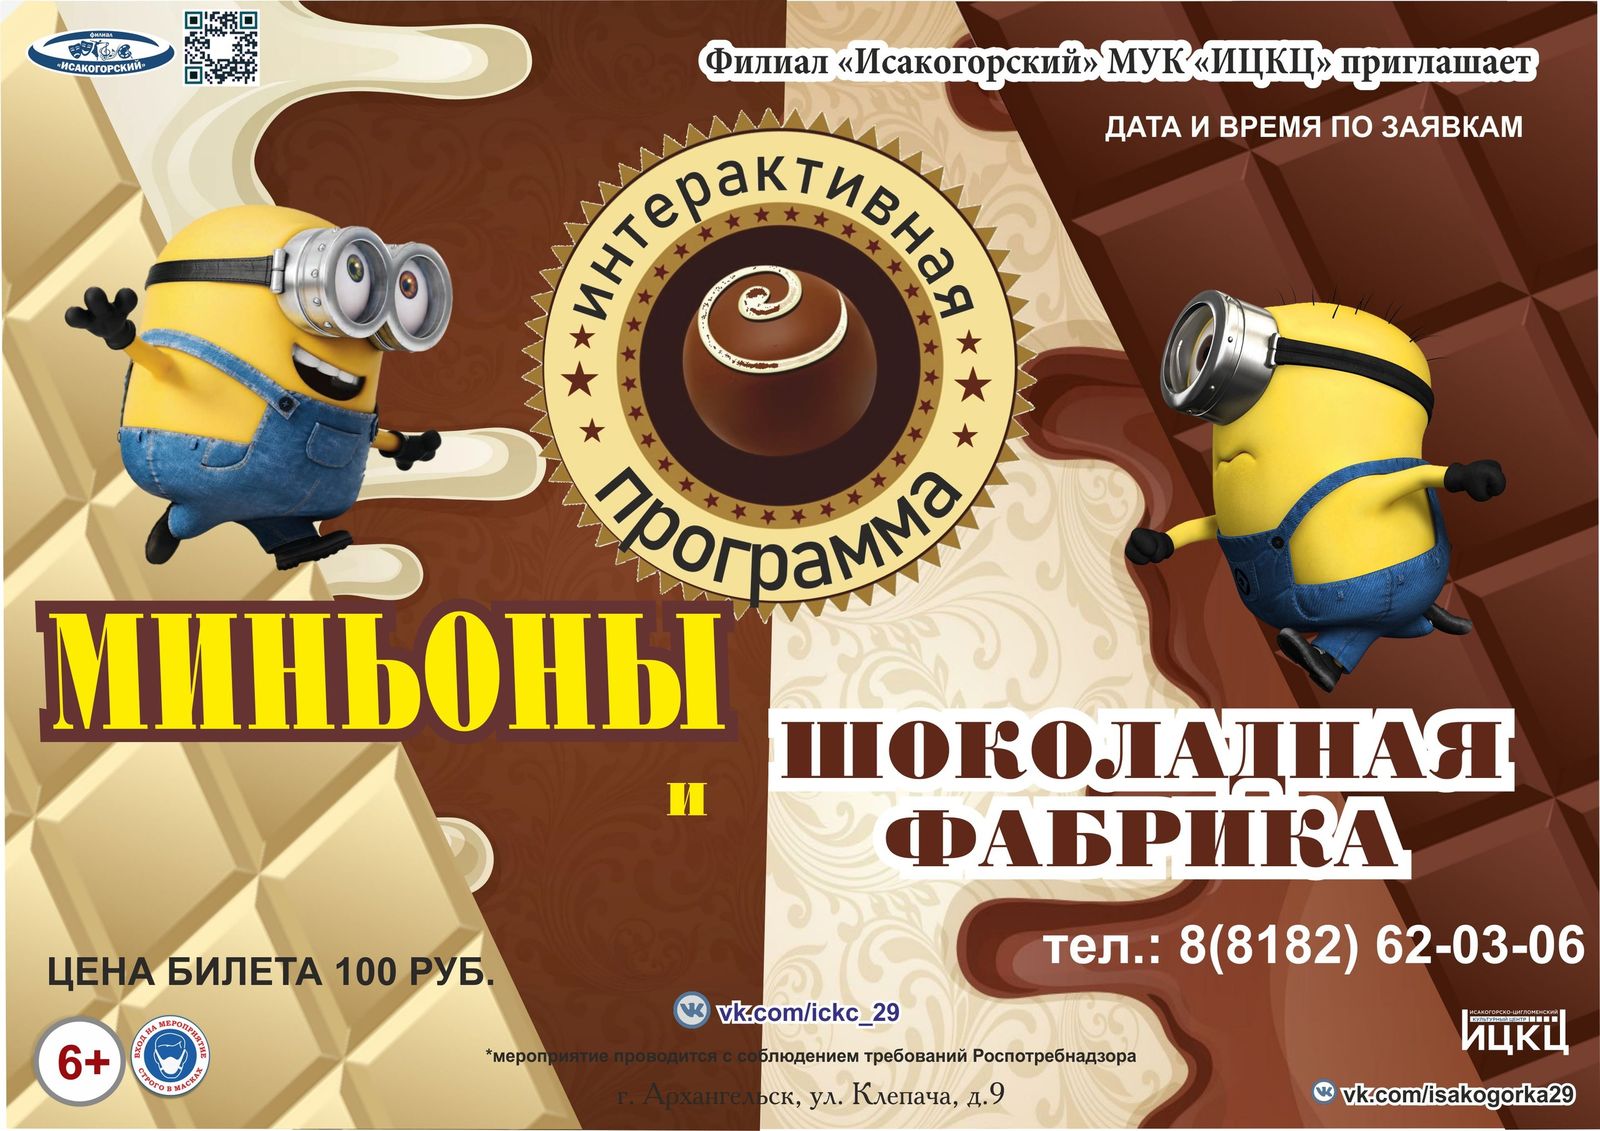 Интерактивная программа «Миньоны и шоколадная фабрика»